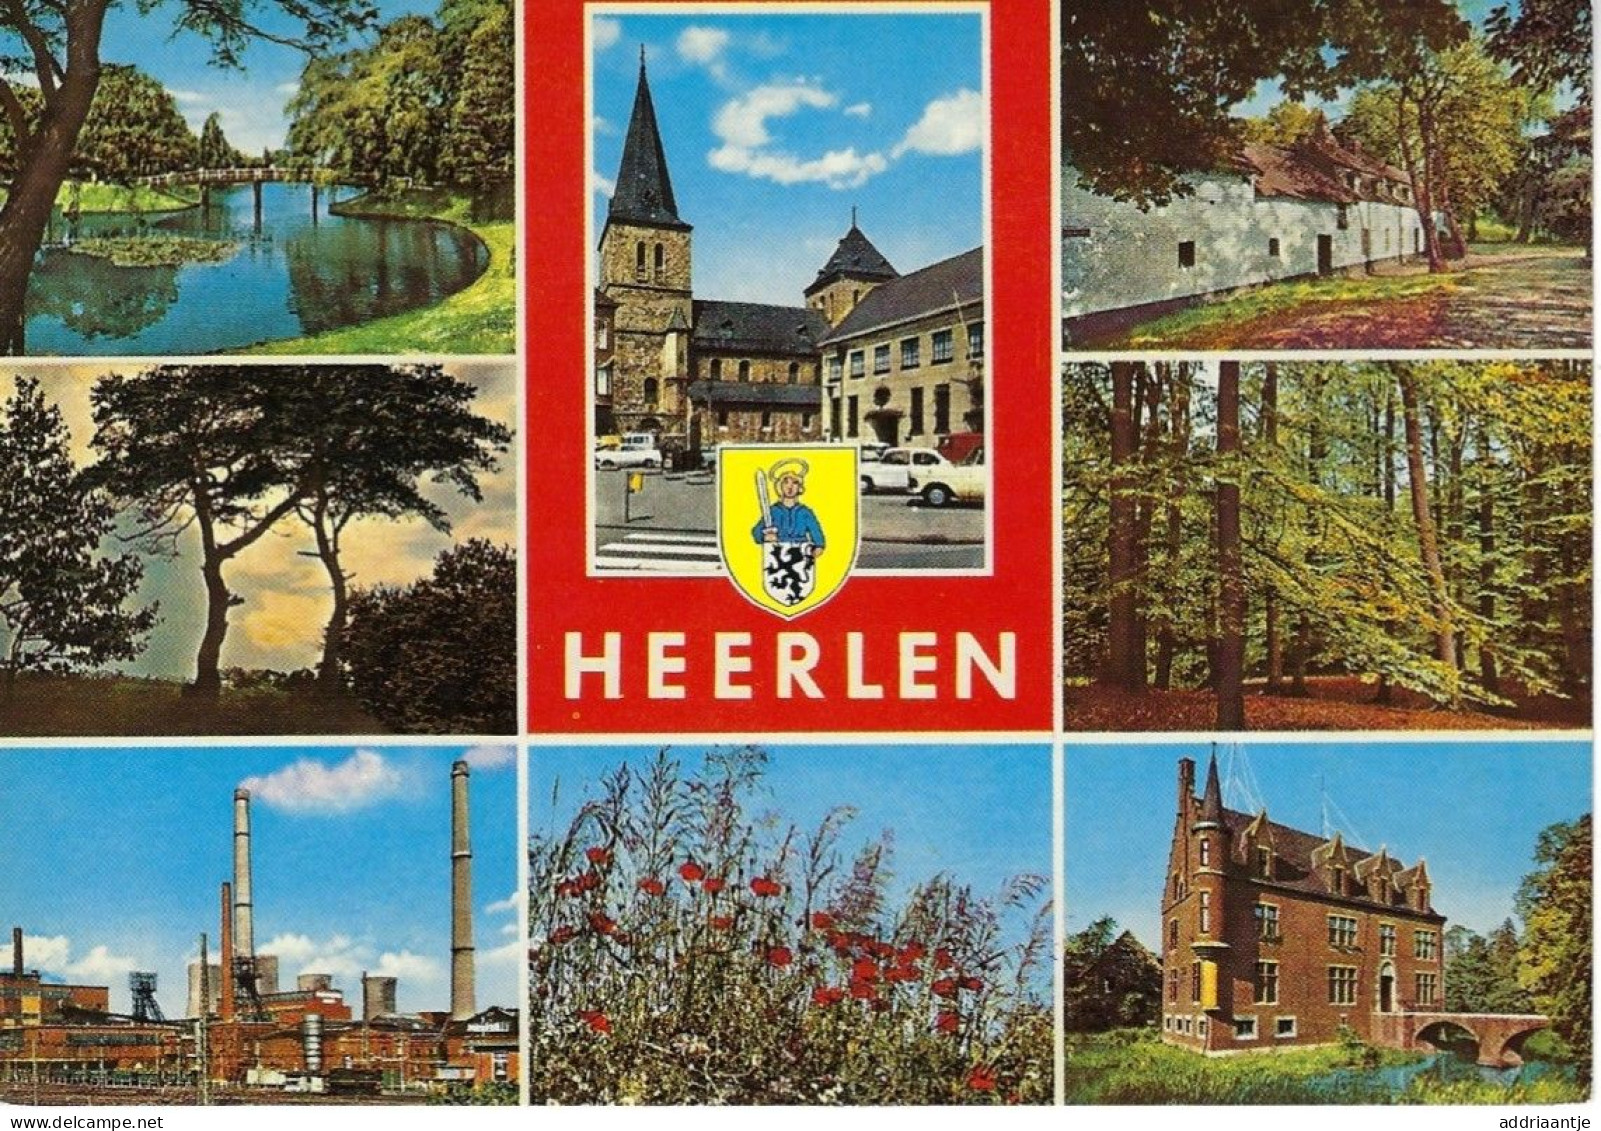 Pictures Of Heerlen - Plaetjes Vaan Heerle - Heerlen